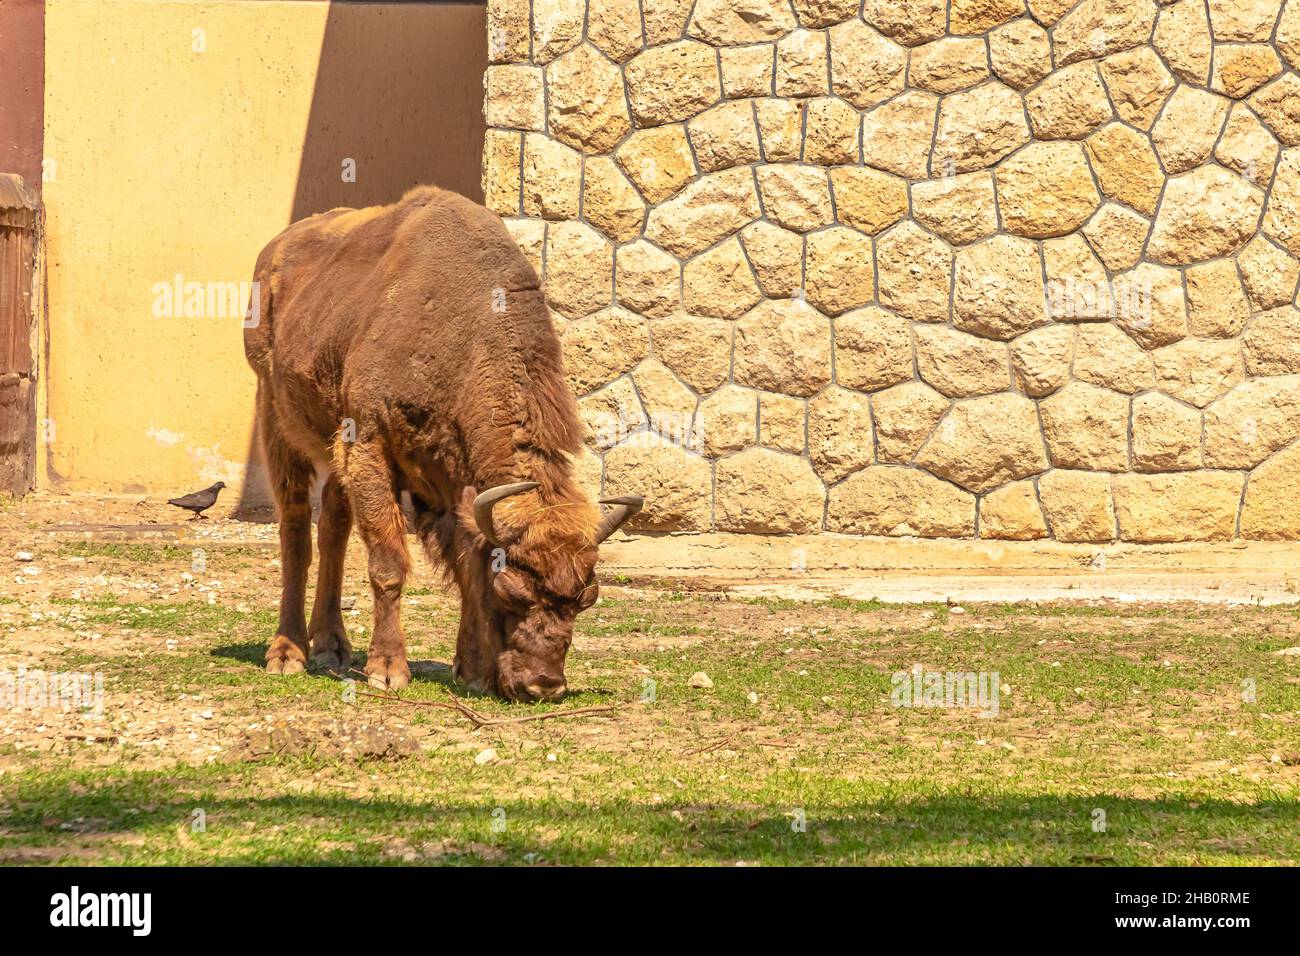 Vista ravvicinata del bufalo europeo adulto d'Europa o del pascolo in erba. Famiglia di bisonti bonasus. Anche conosciuto come bisonte europeo del legno. Foto Stock